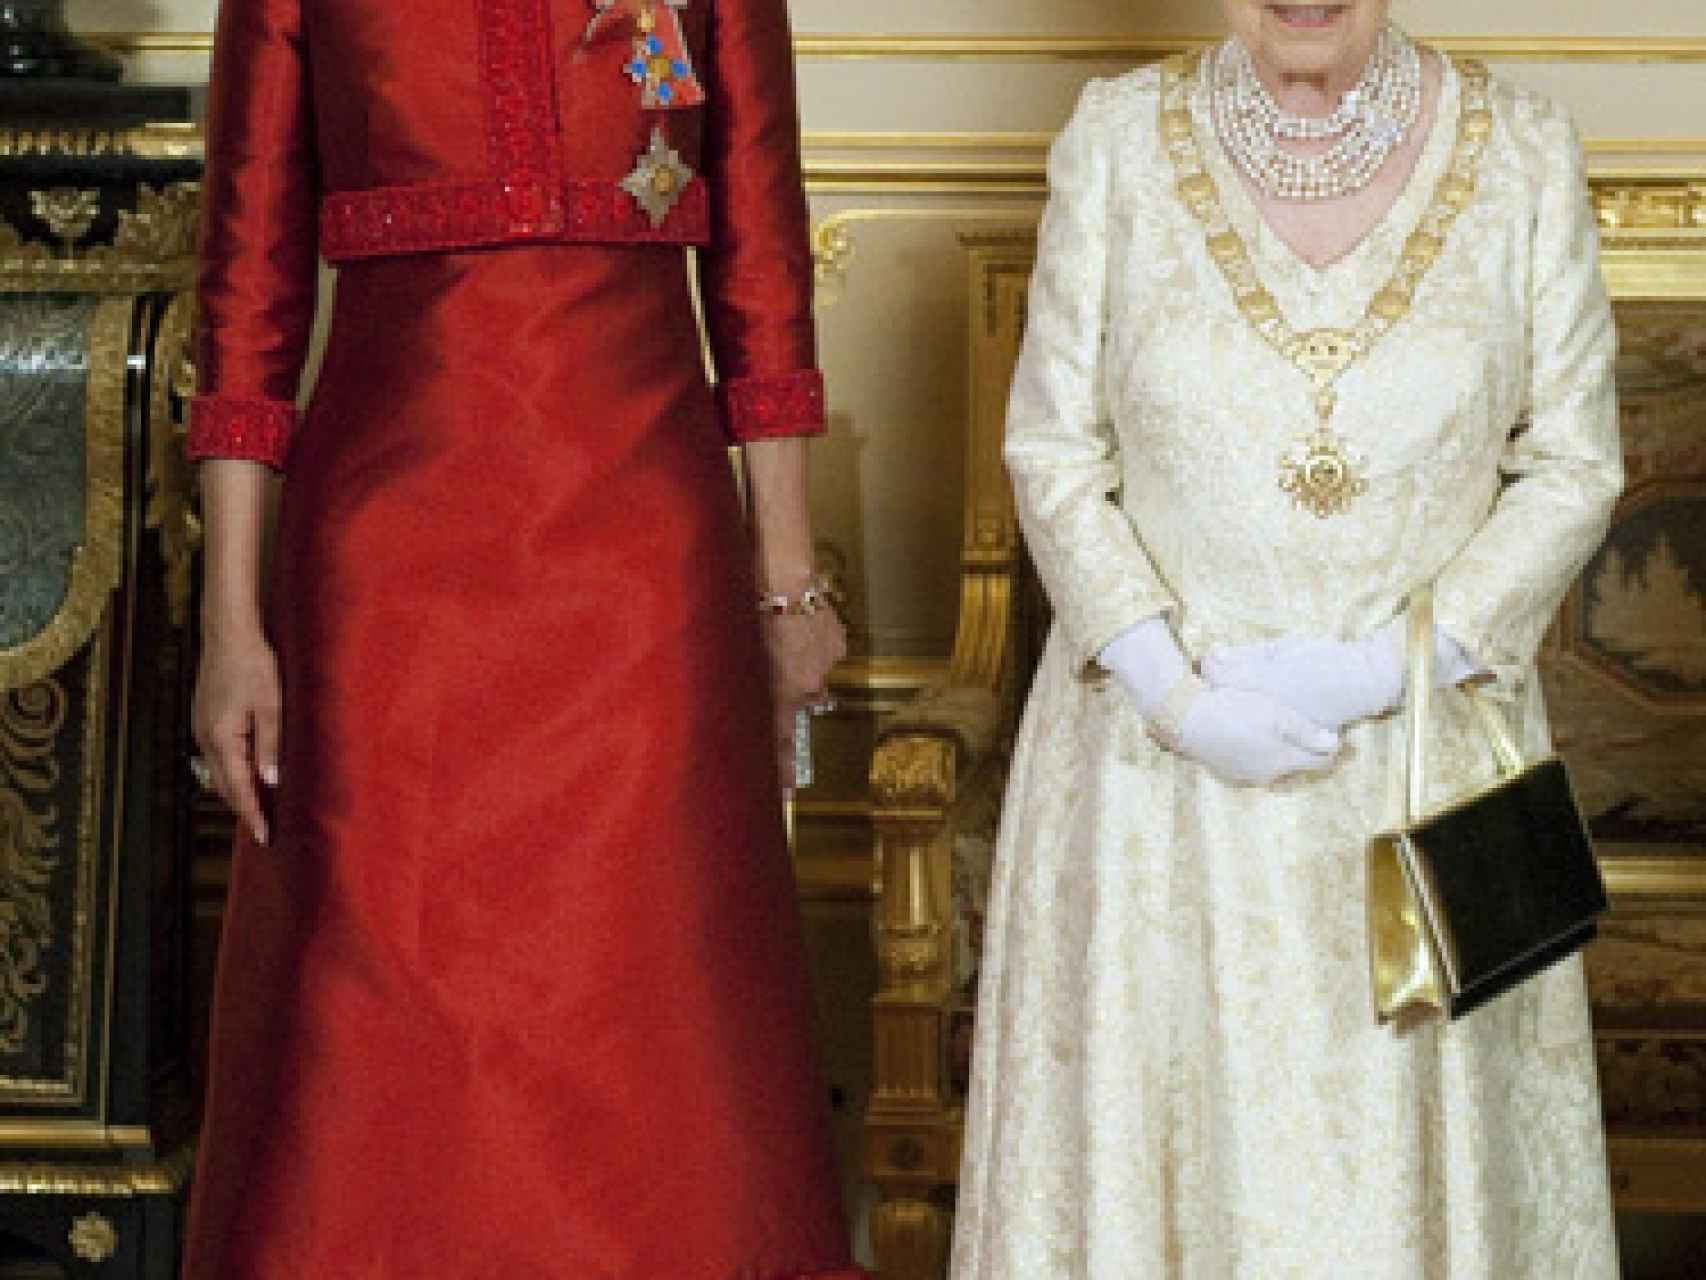 La ex jequesa junto a la reina de Inglaterra.